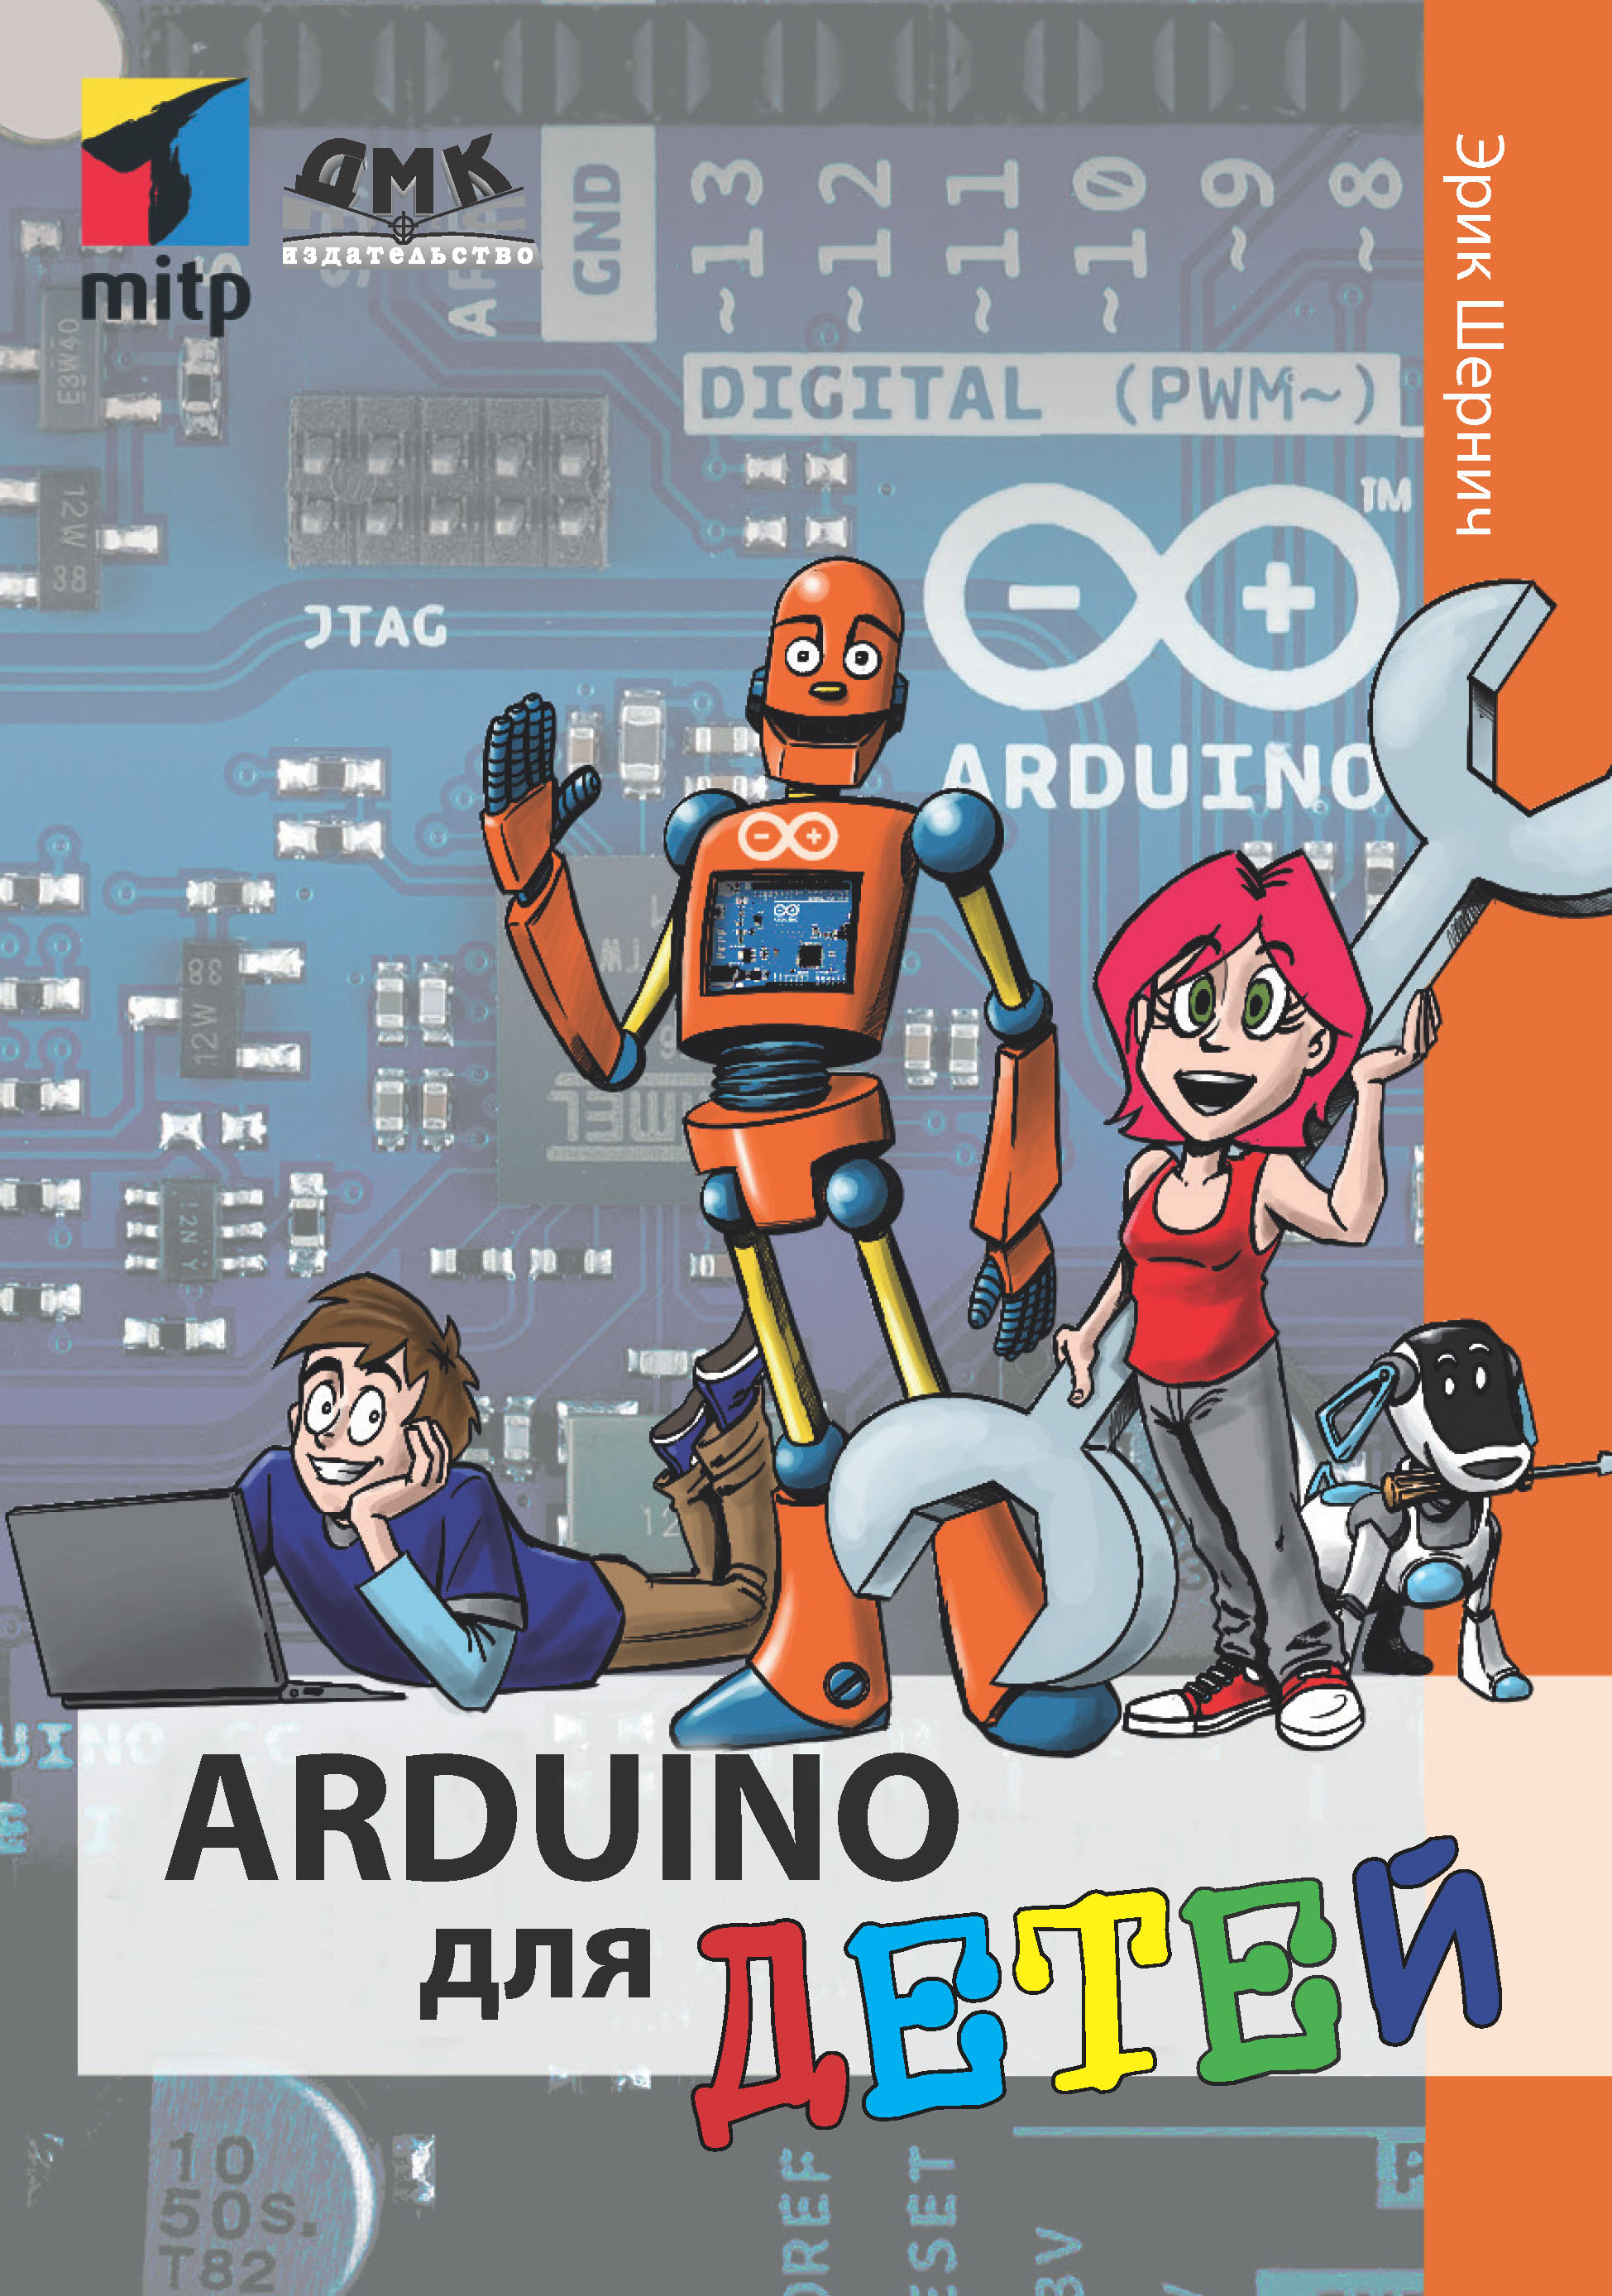 Книга  Arduino для детей созданная Эрик Шернич, М. М. Степаненкова может относится к жанру зарубежная компьютерная литература, зарубежная образовательная литература, зарубежные детские книги, книги для подростков, программирование, электроника. Стоимость электронной книги Arduino для детей с идентификатором 48411271 составляет 490.00 руб.